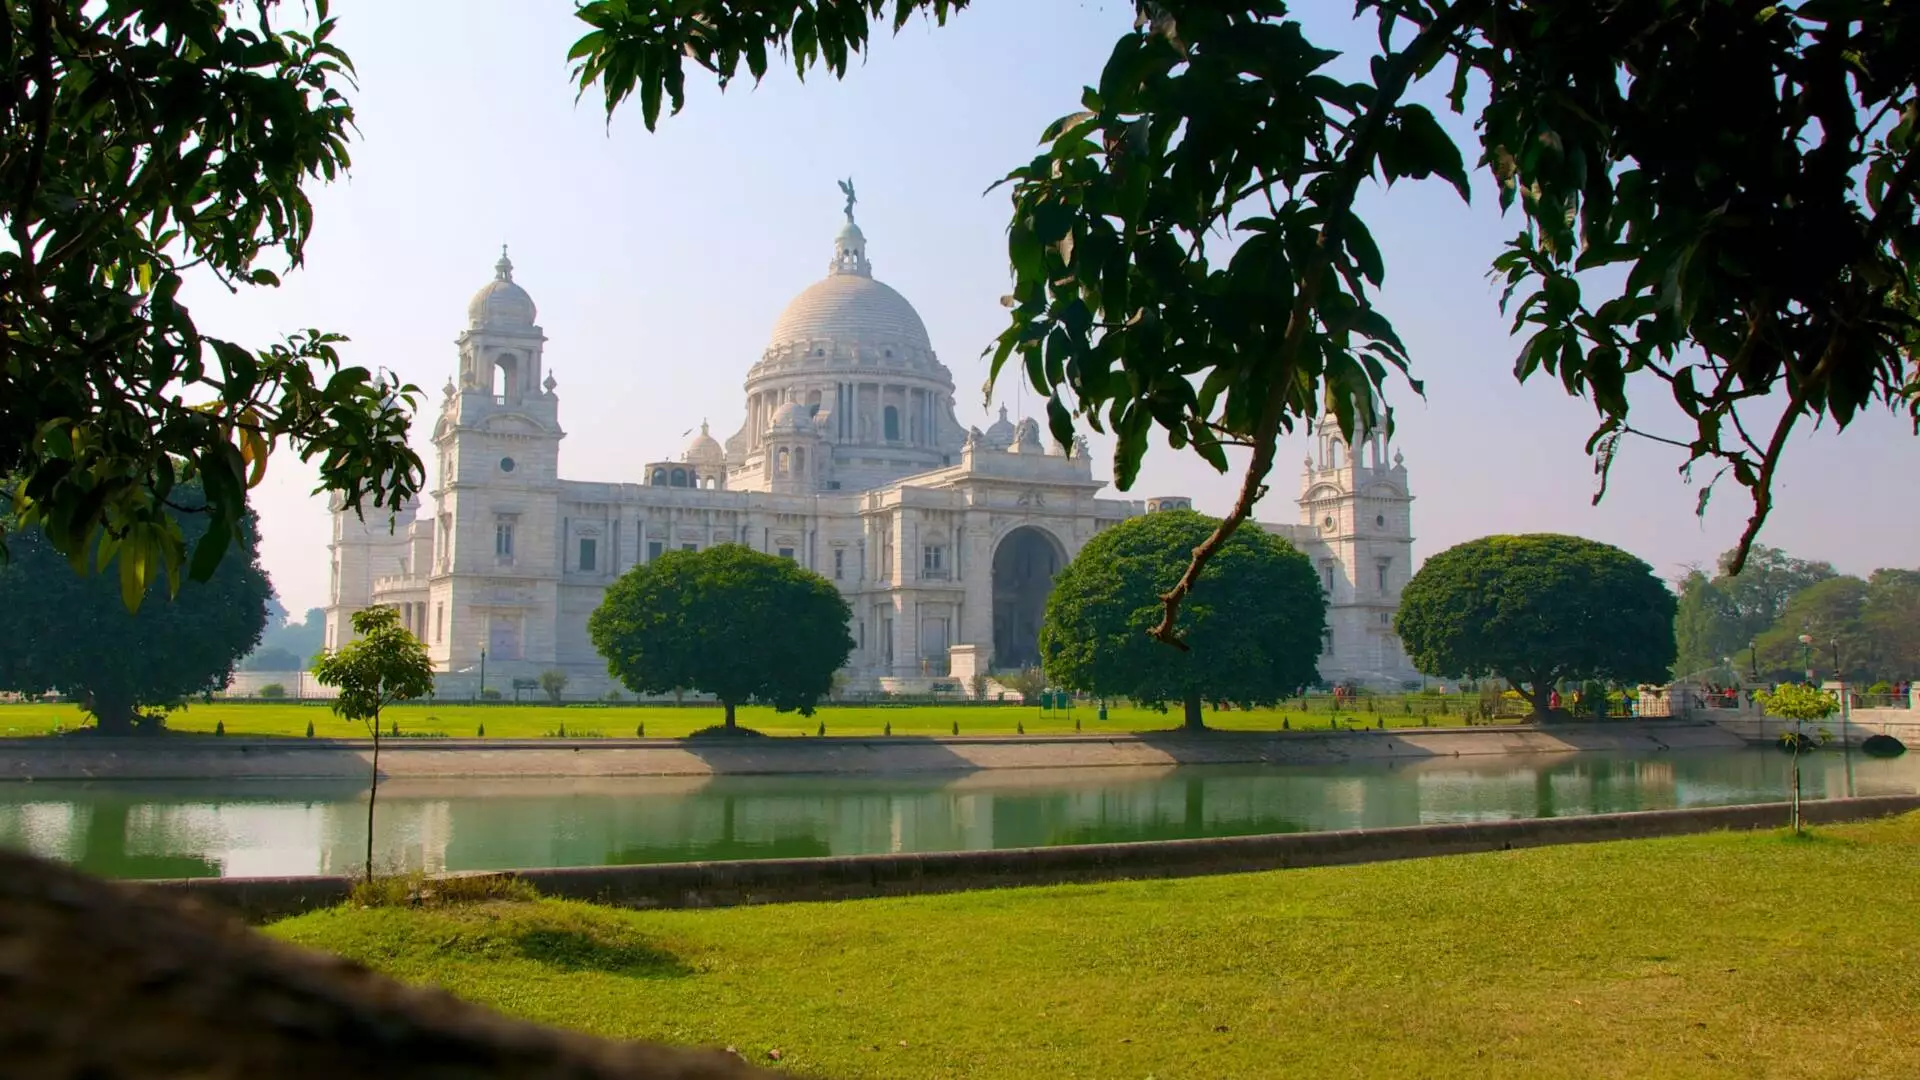 Victoria Memorial On Kolkata In India